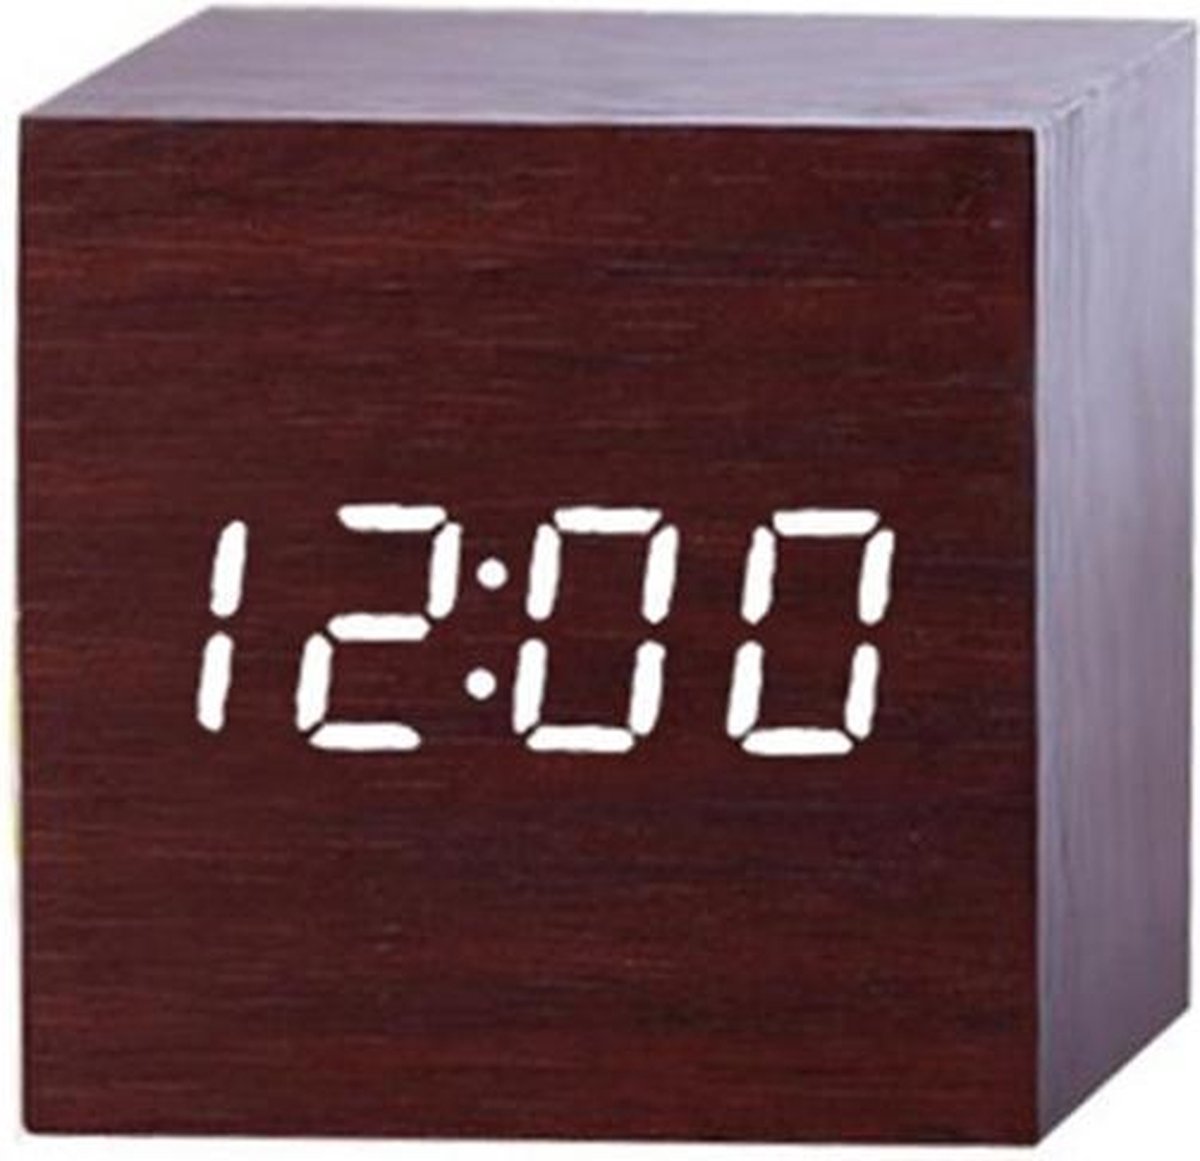 Houten wekker Kubus - Bruin - Digitale wekker - Thermometer - Dimbaar – Cube klok clock - Gratis Adapter - Draadloos